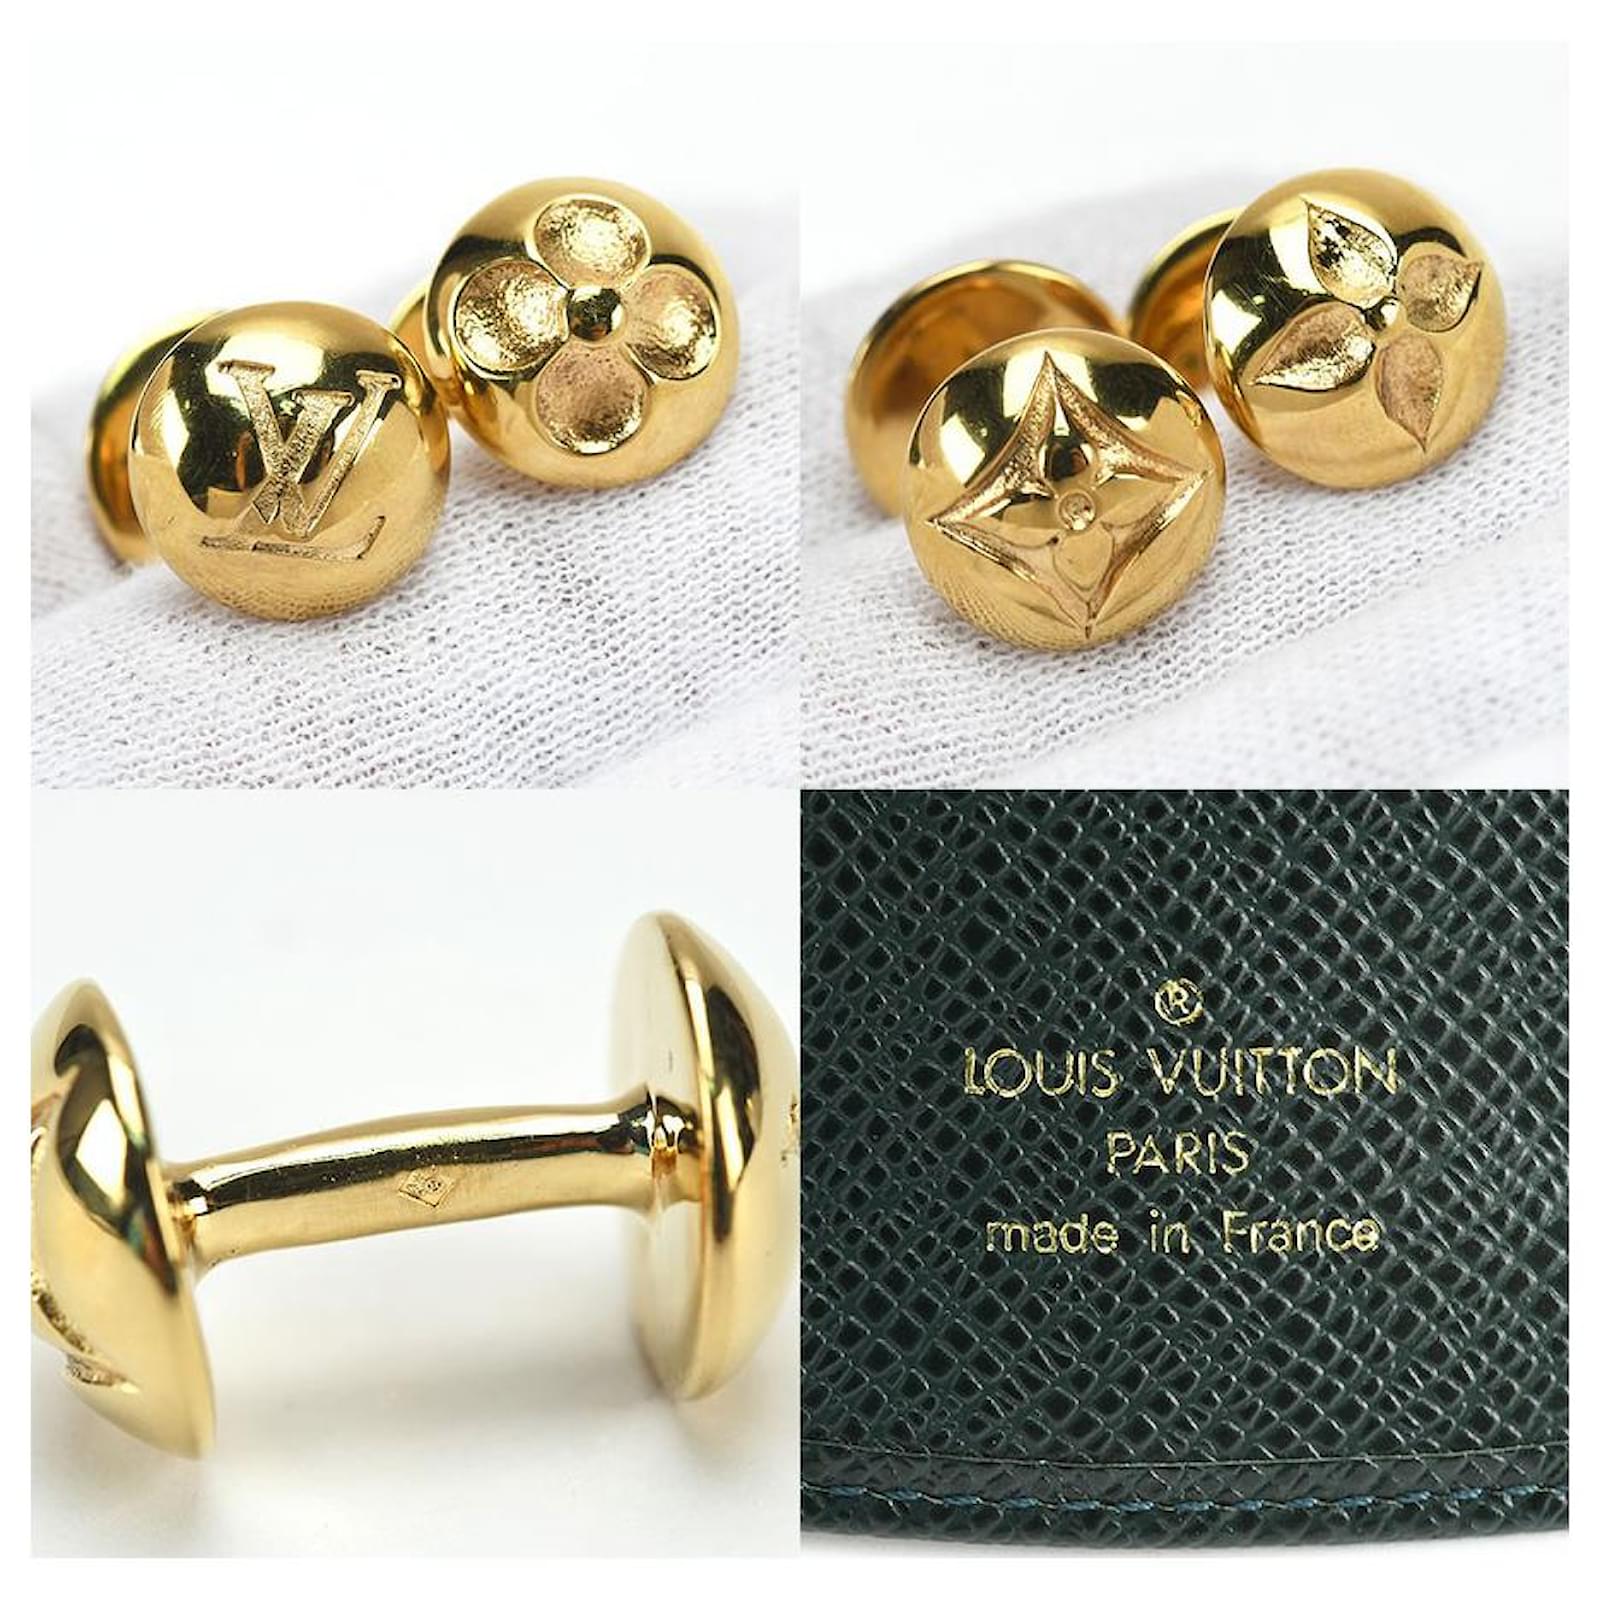 Louis Vuitton Gold Plated Cufflinks Louis Vuitton